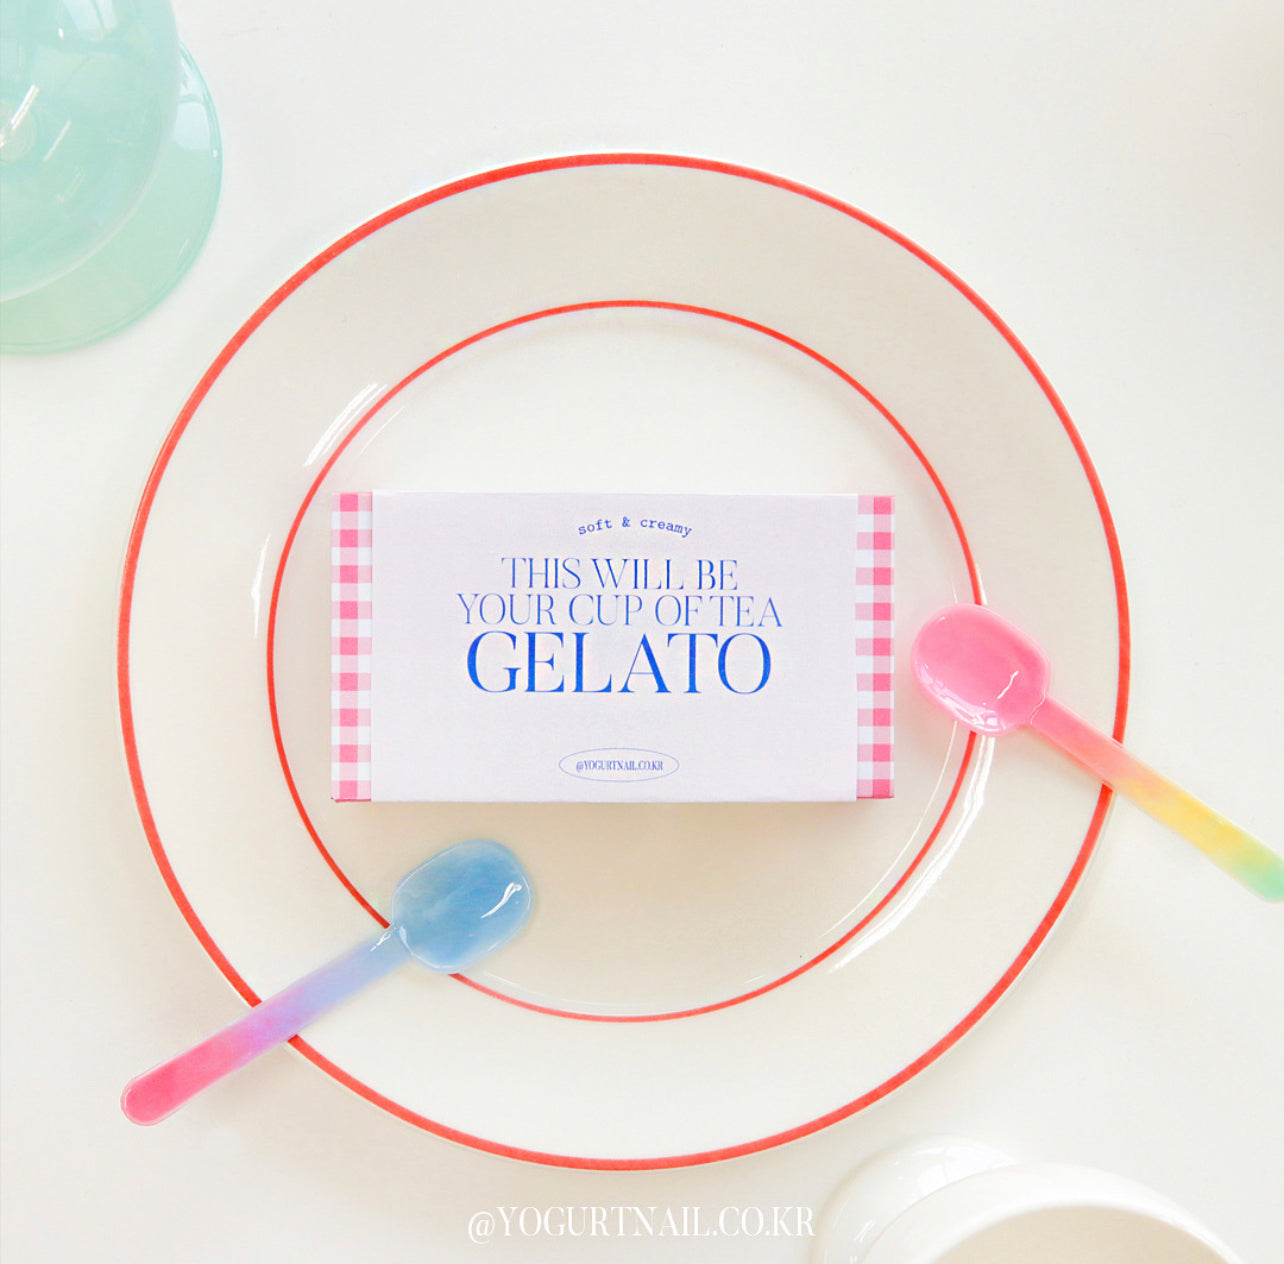 Yogurtnail Kr. - Gelato Collection (Individual/Full set)